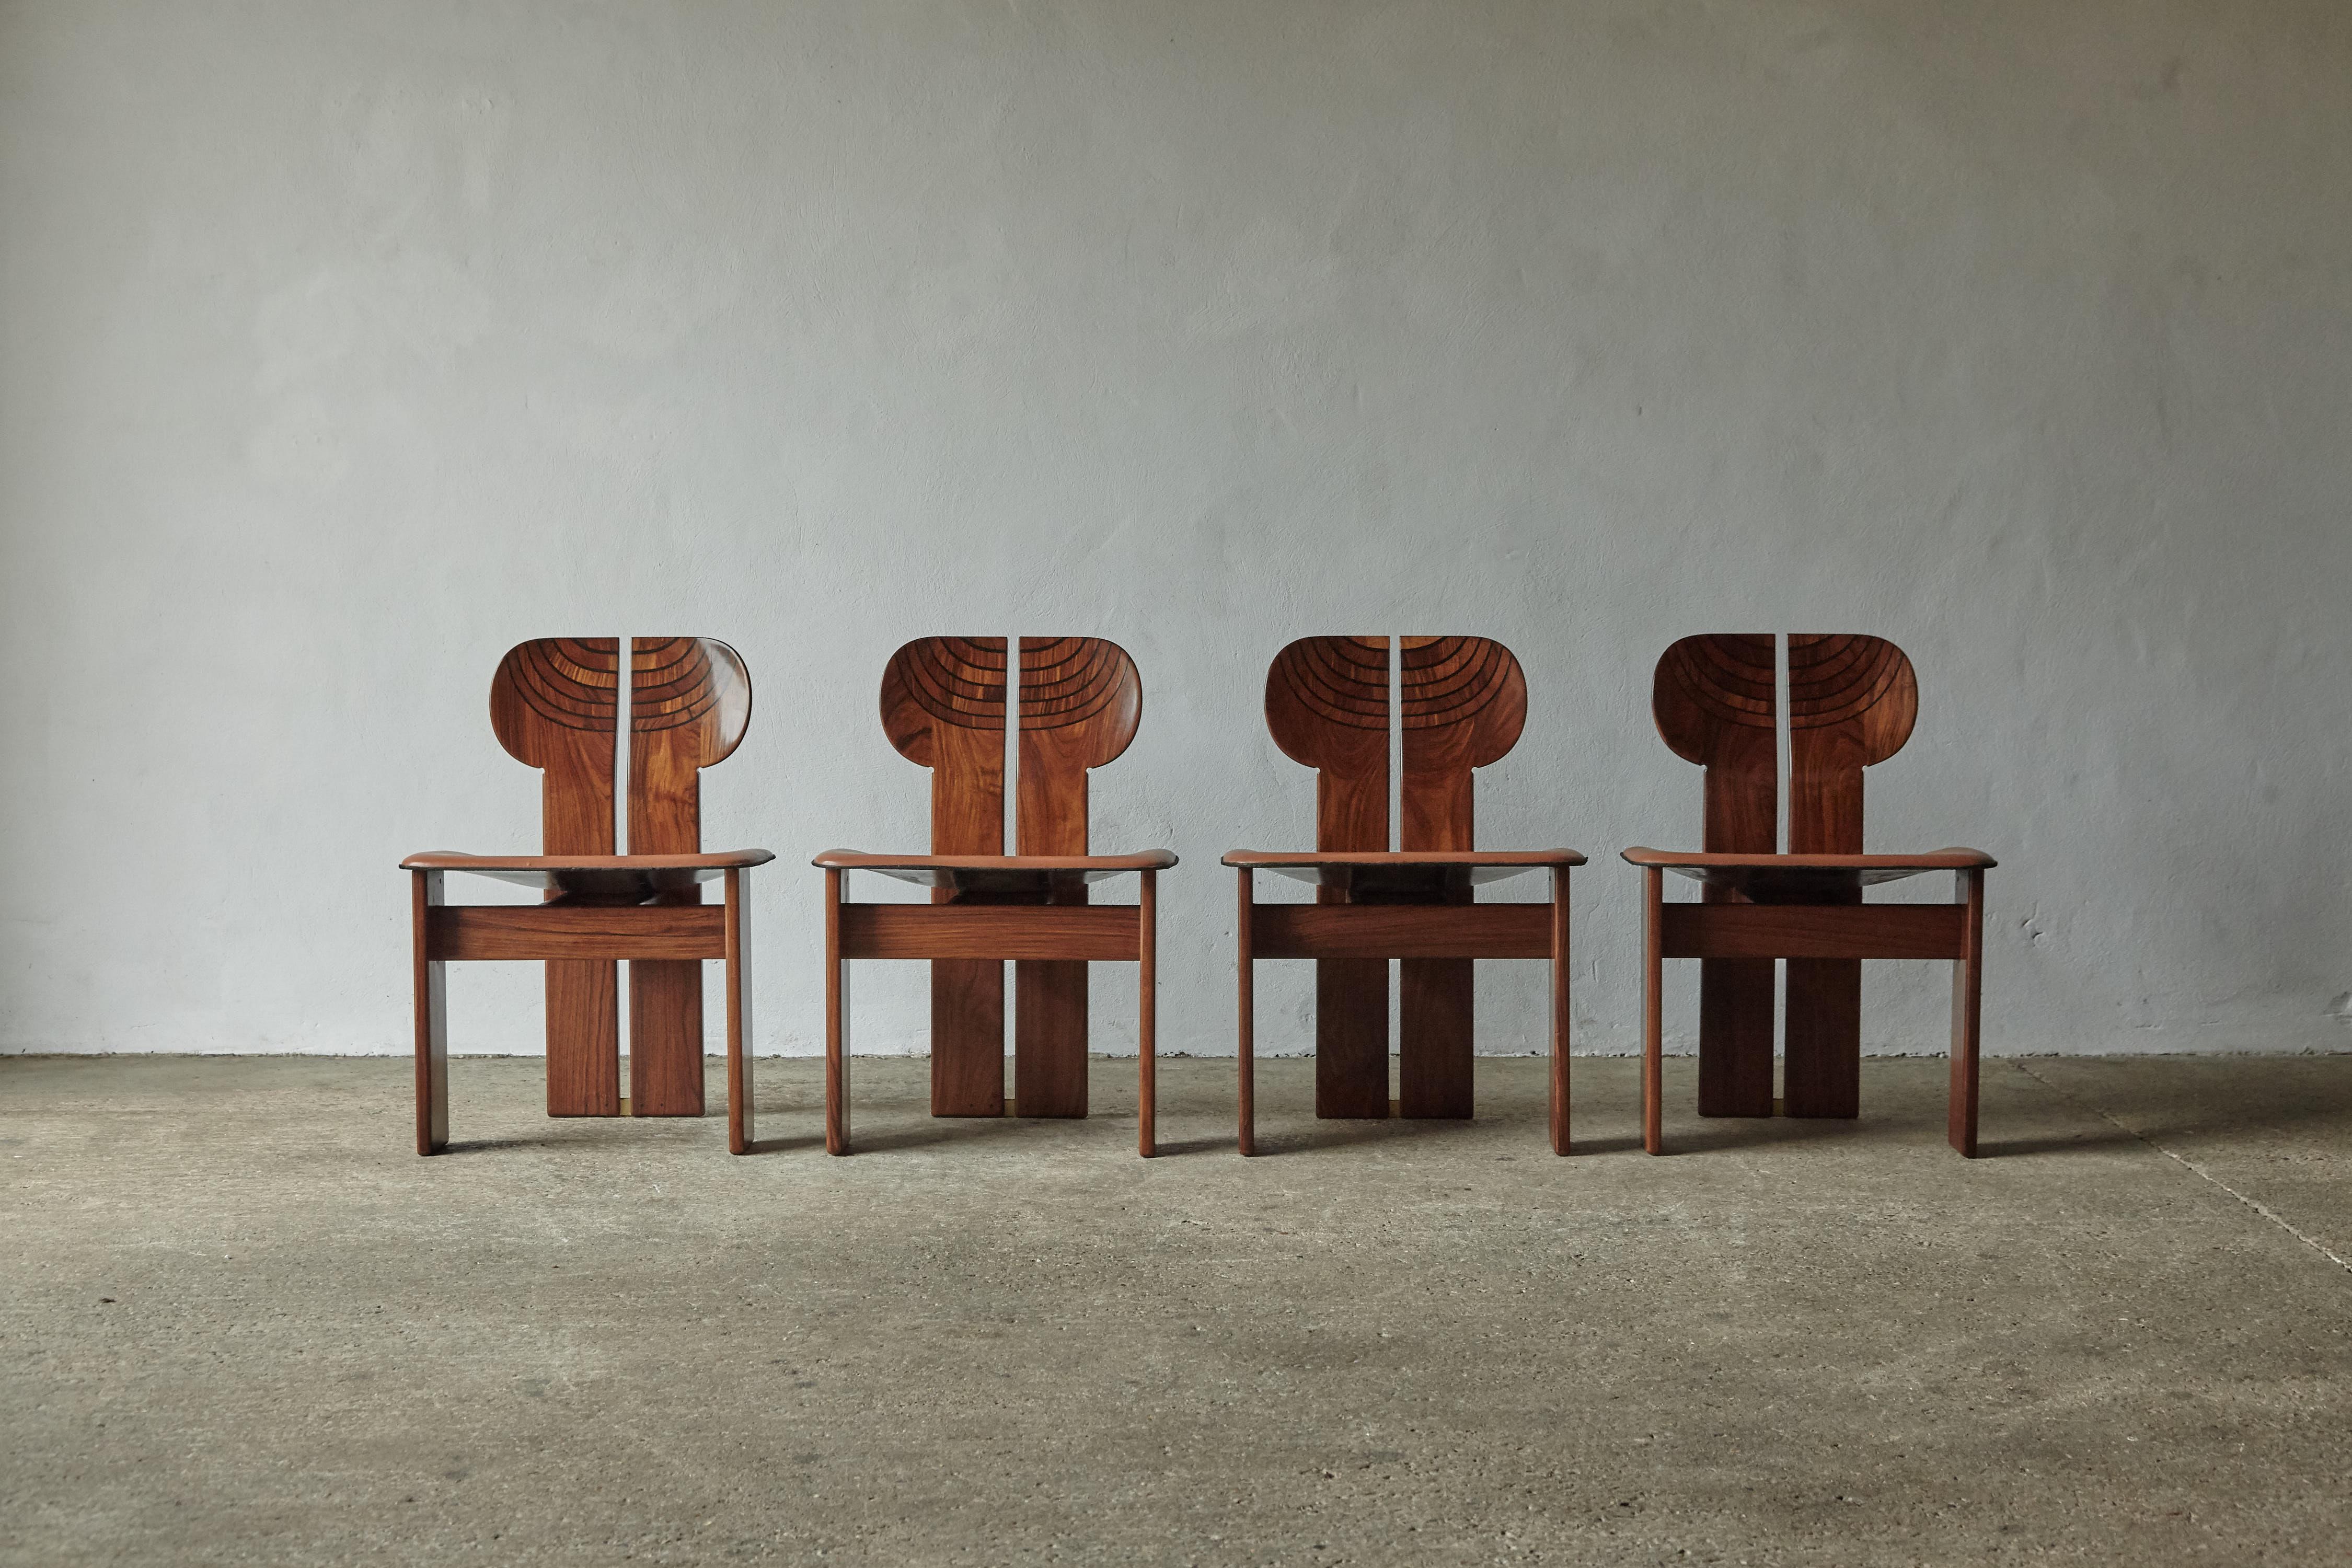 Un ensemble rare de quatre superbes chaises Africa conçues par Afra & Tobia Scarpa dans les années 1970, et produites par Maxalto, Italie. Il s'agit de très beaux exemples en bois exotique rare, en ronce, en cuir noir et en laiton. Bon état